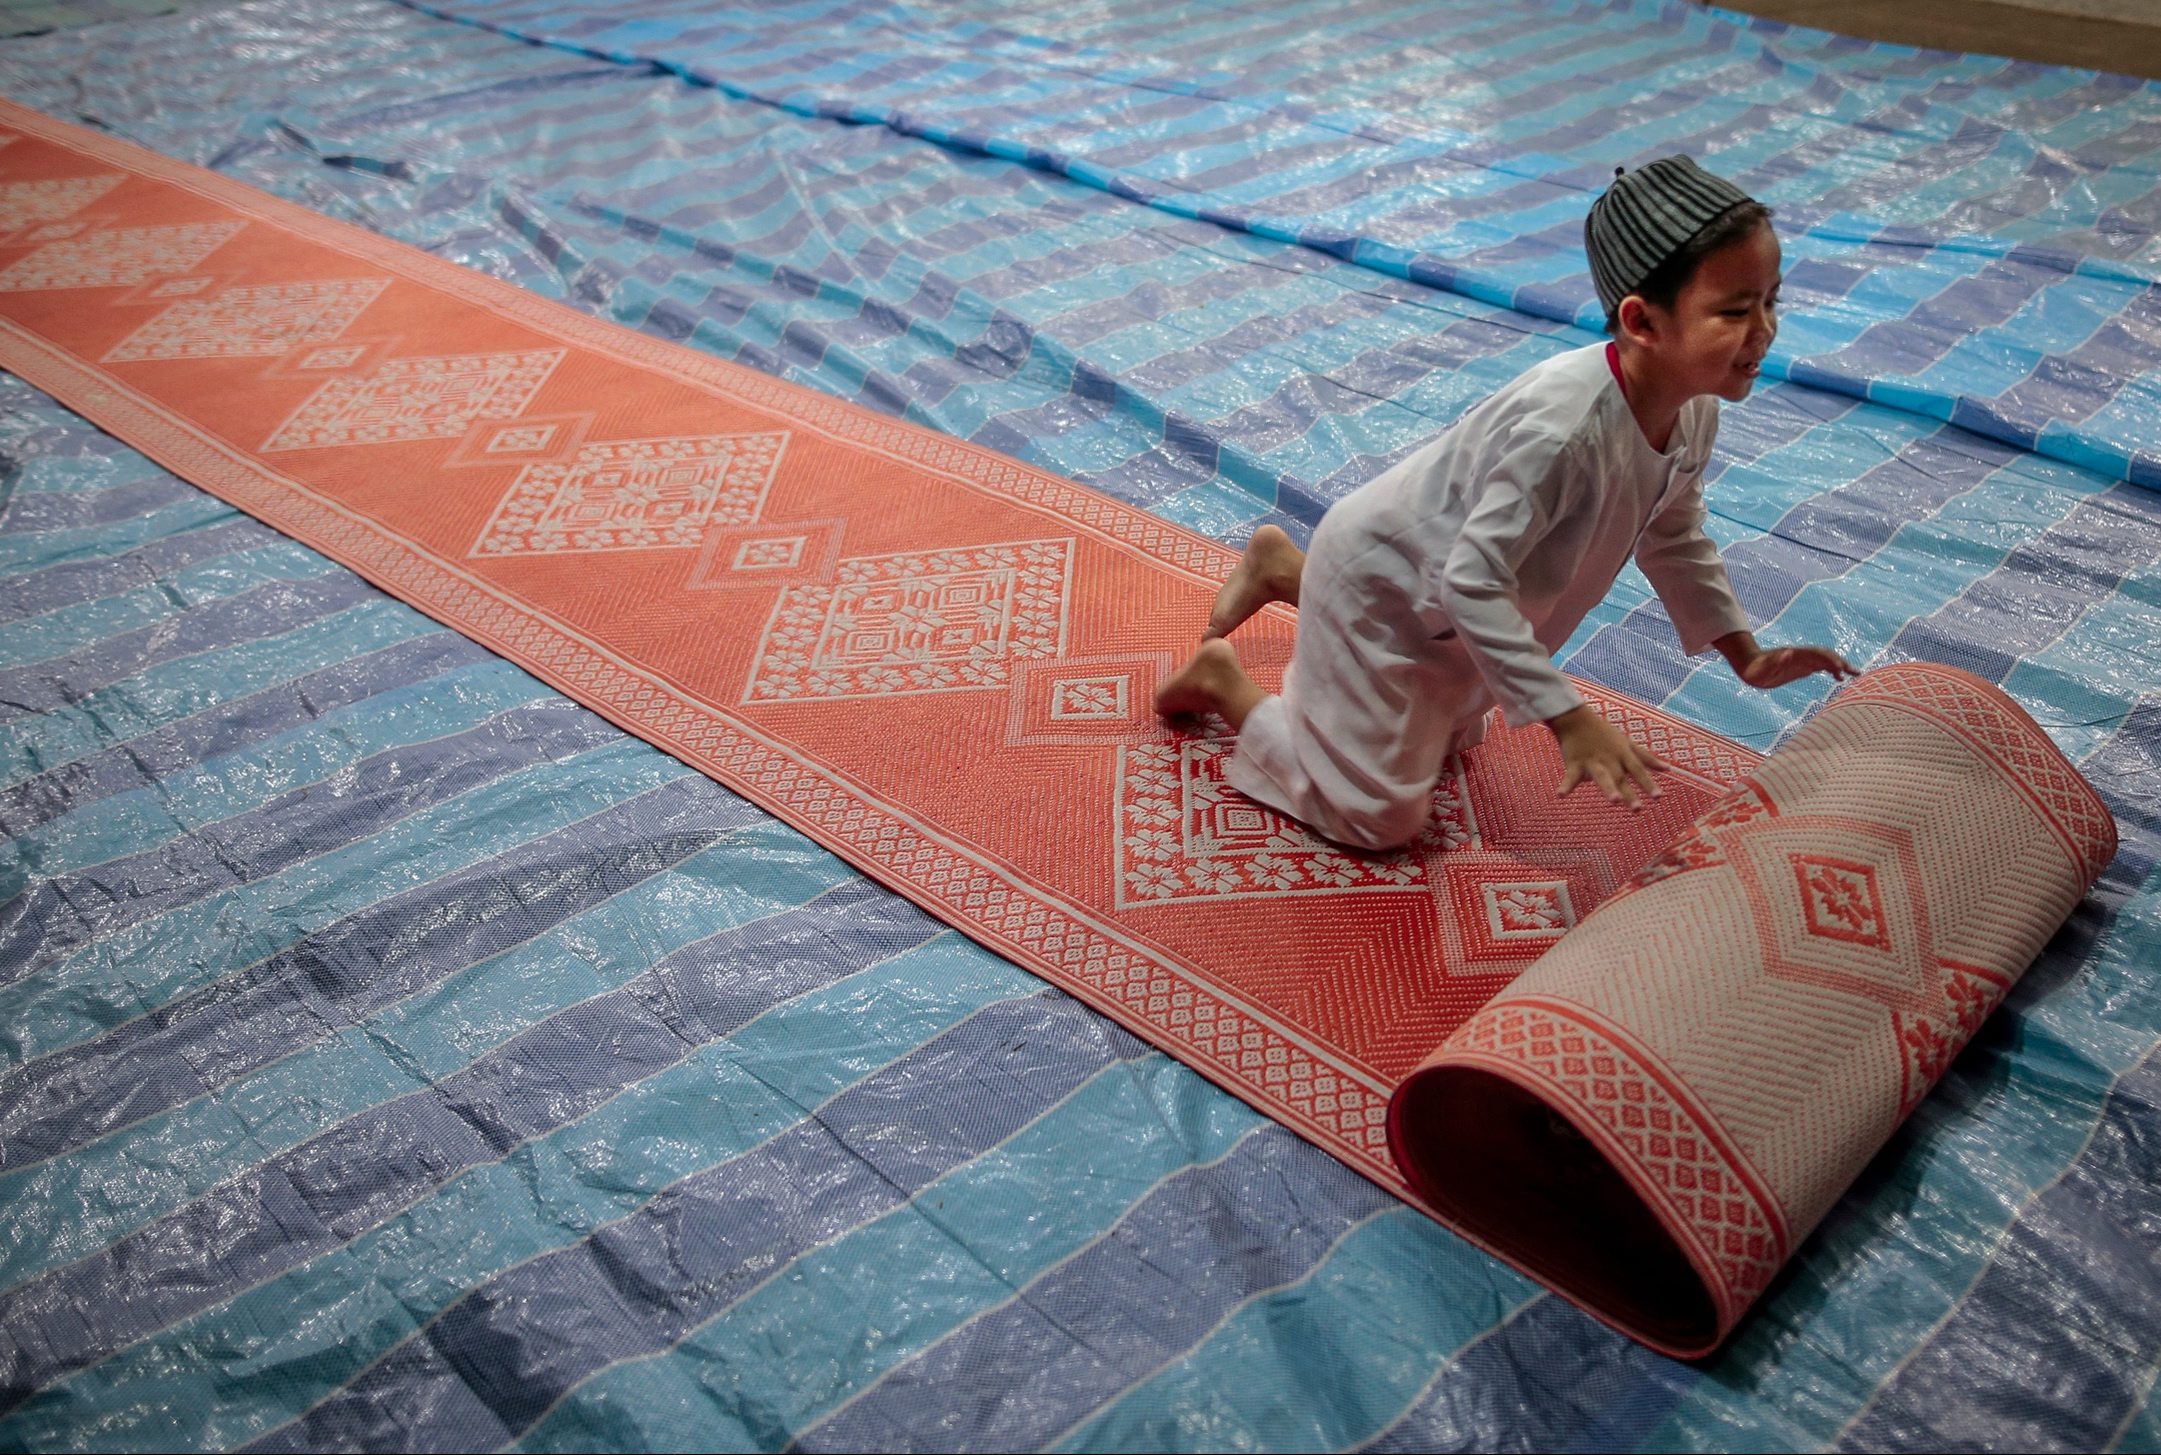 Een jongen rolt een gebedsmat uit in Singapore, speciaal voor het tarawieh gebed. Tijdens dit avondgebed wordt de vastendag afgesloten.